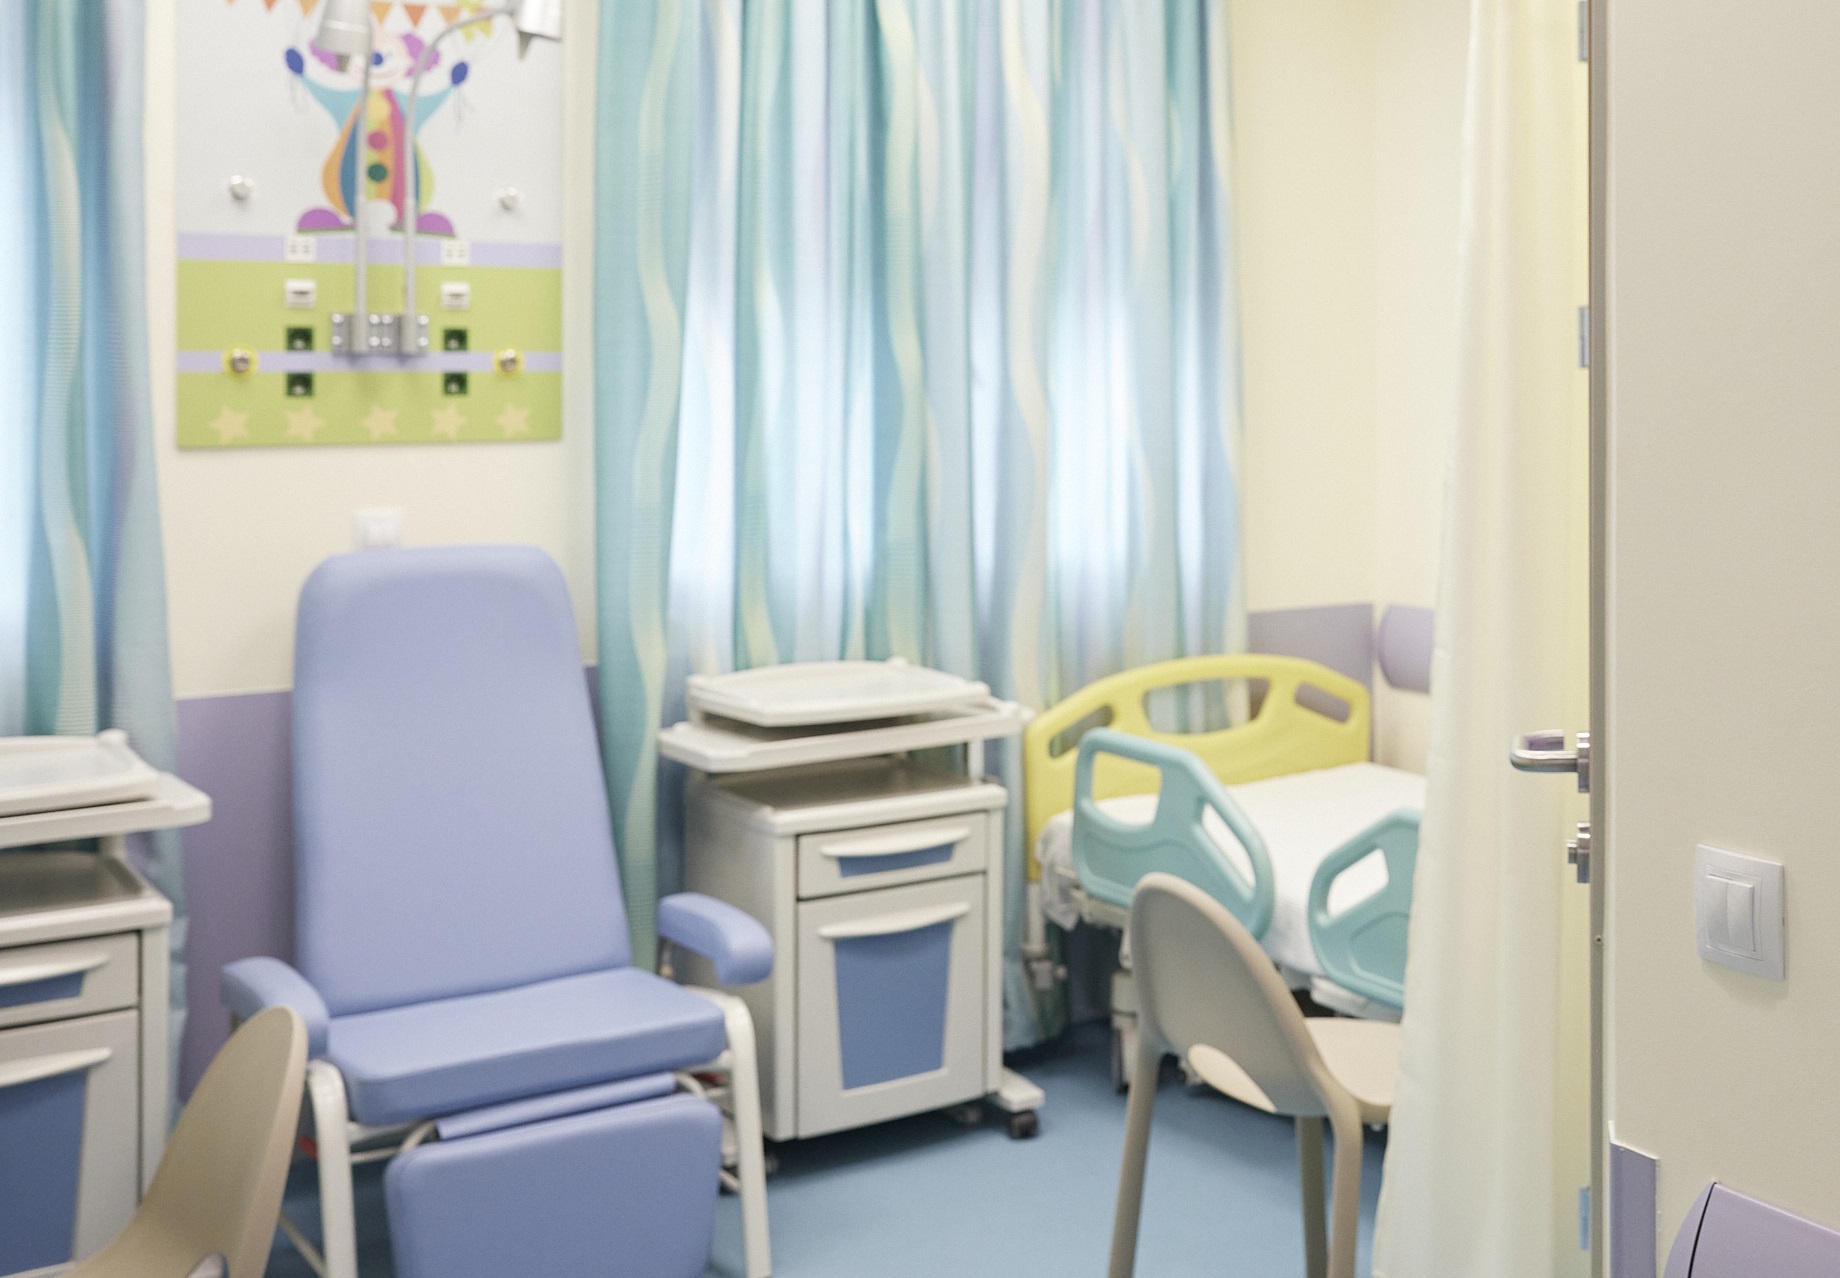 Τρεις παιδίατροι θα στελεχώσουν το νοσοκομείο του Άργους – Γκάγκα: Παρεμβαίνουμε άμεσα όπου χρειάζεται